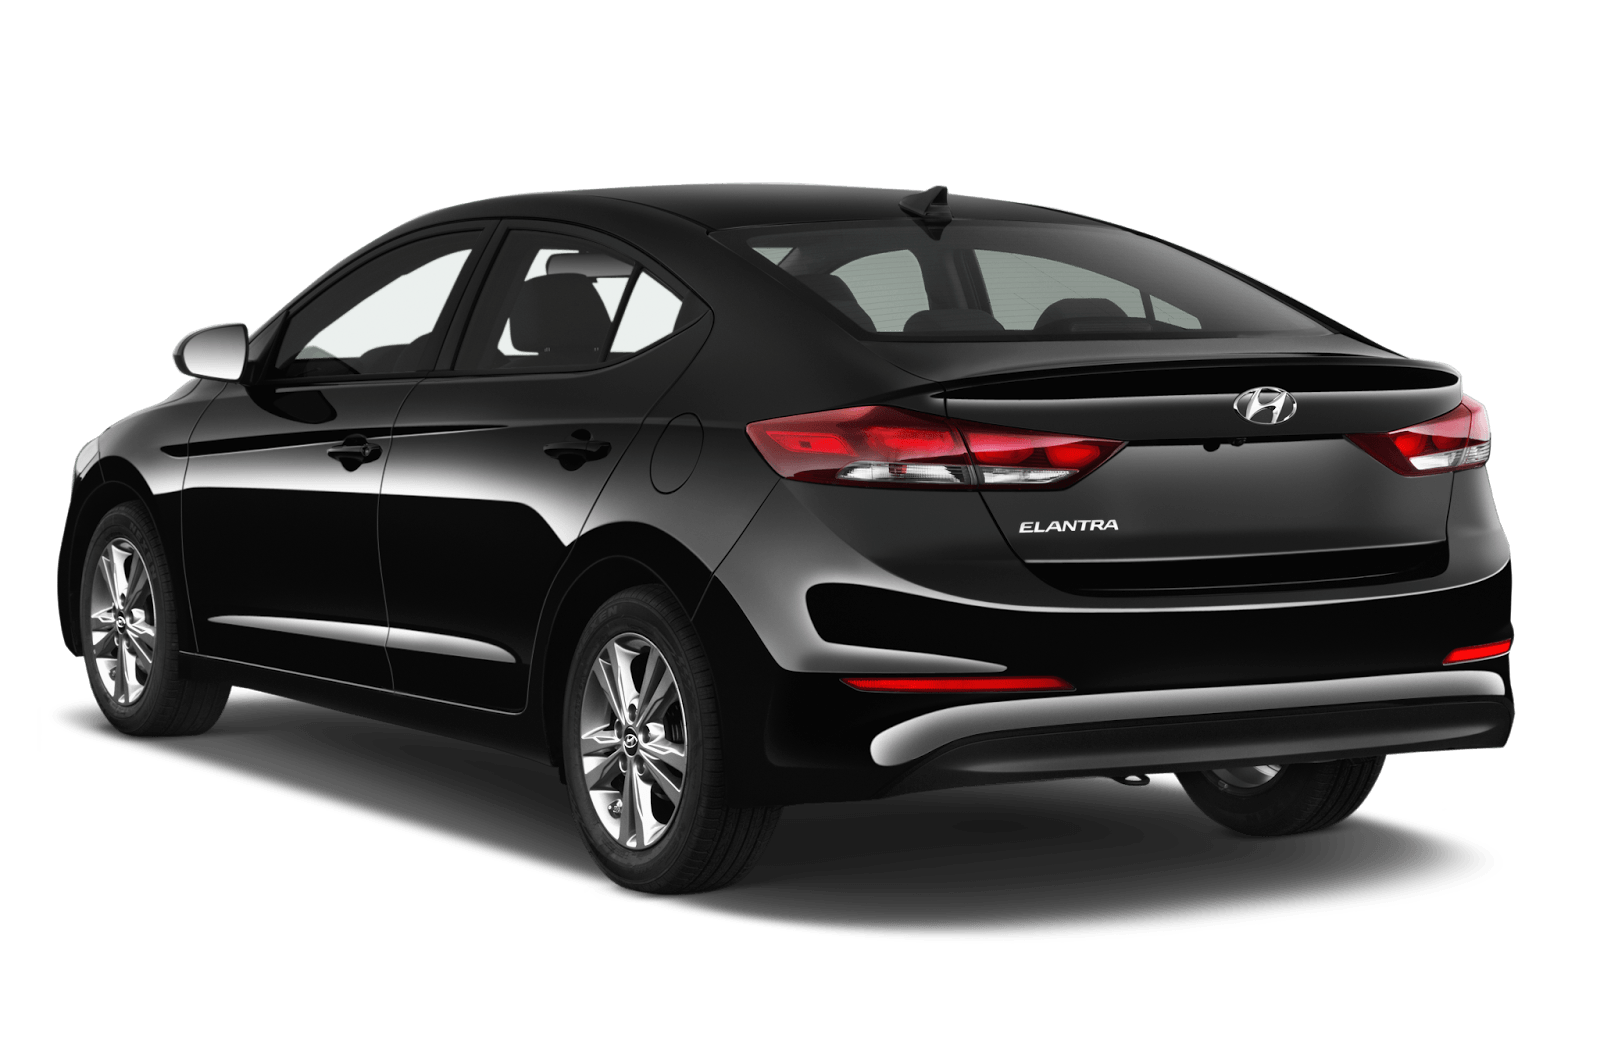 New 2016 Hyundai Elantra HD Photo Latest New & Old Car HD